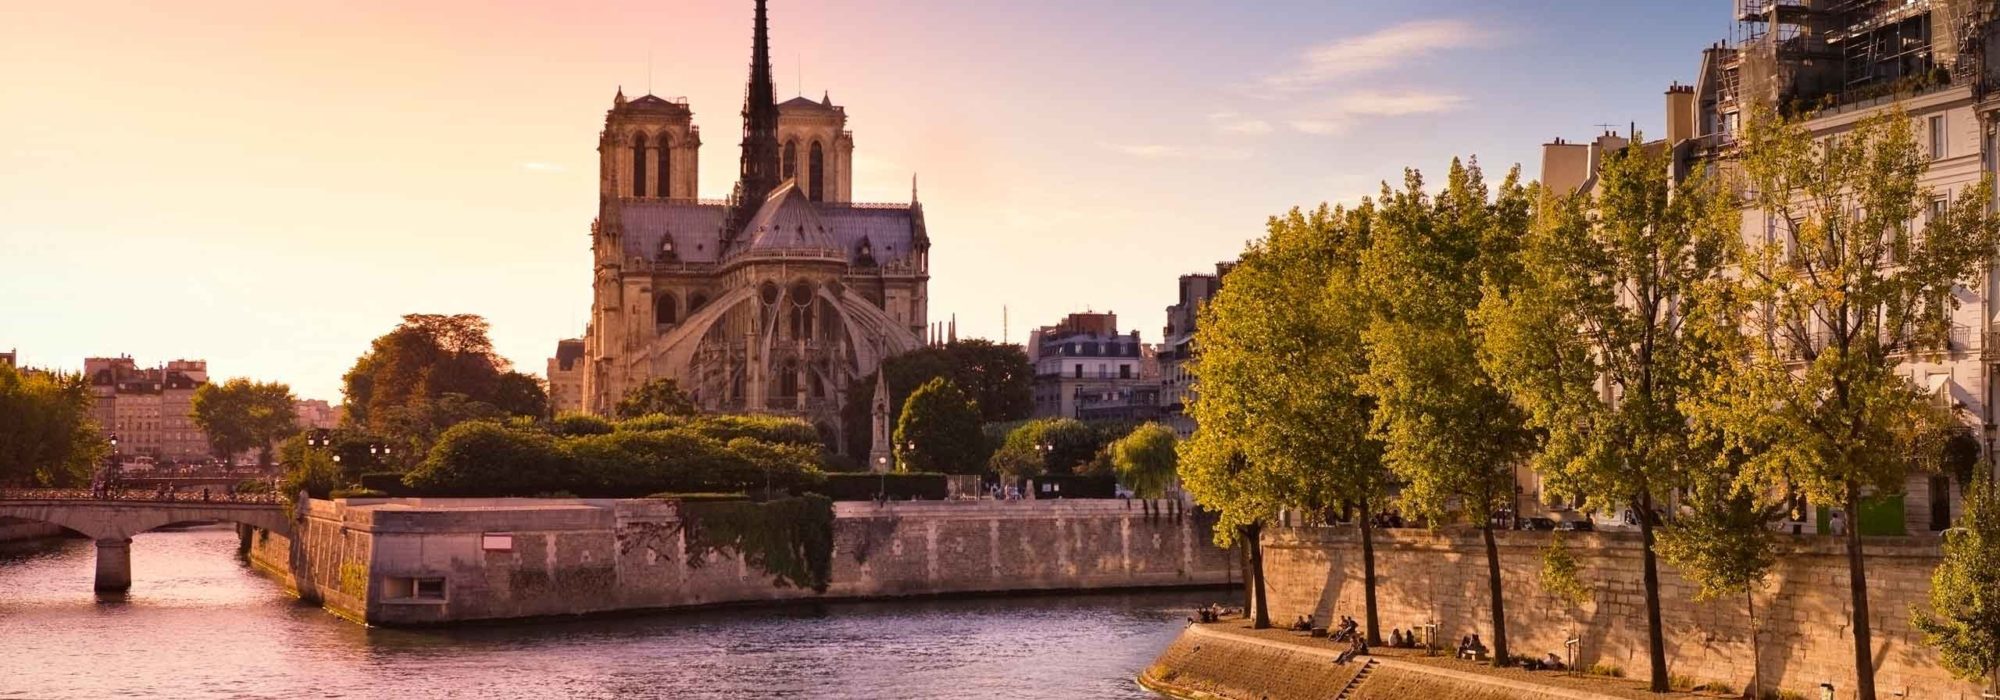 Paris Travel travel agents packages deals